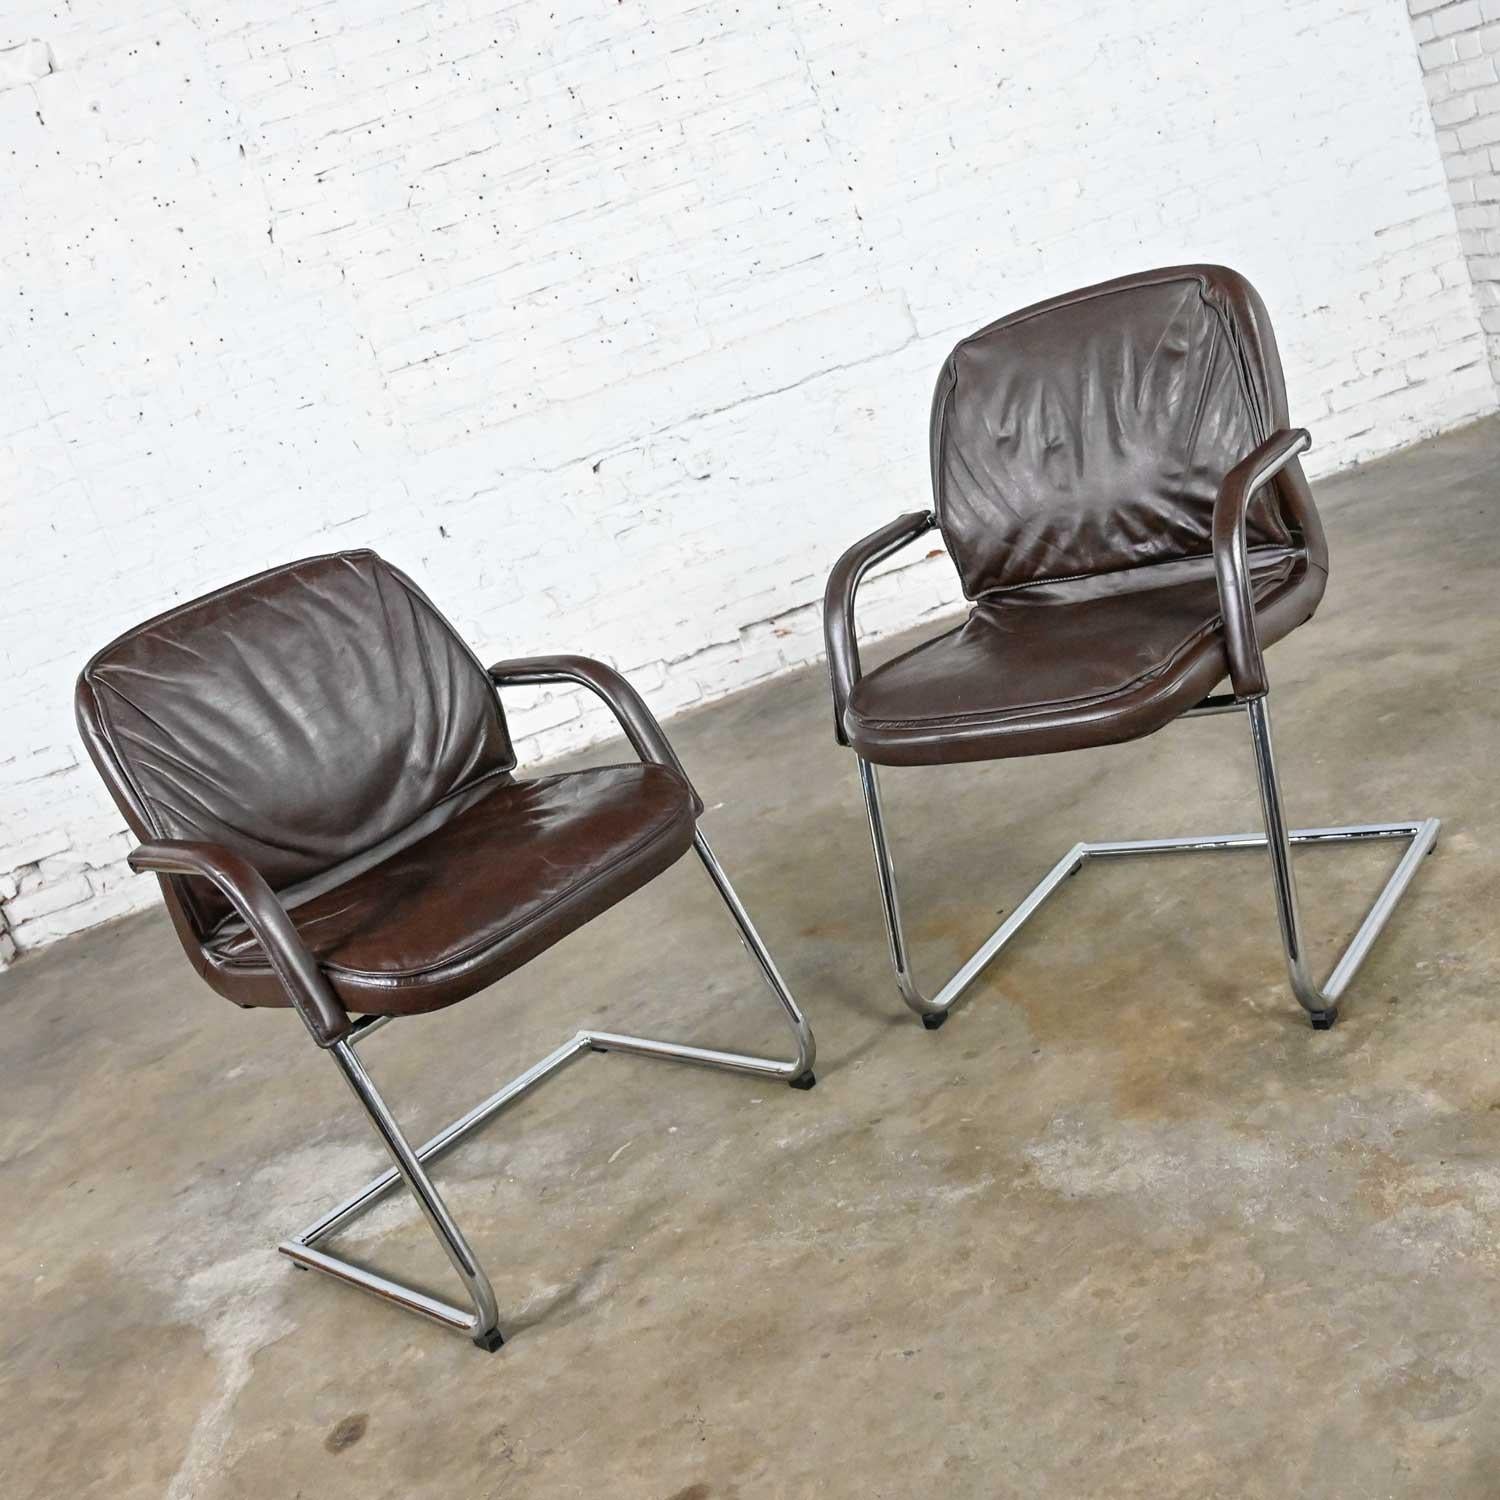 Belle paire de chaises cantilever vintage moderne Vecta Contract en cuir brun et chrome. Belle condition, en gardant à l'esprit qu'il s'agit d'un produit vintage et non pas neuf, donc il y aura des signes d'utilisation et d'usure. Veuillez voir les